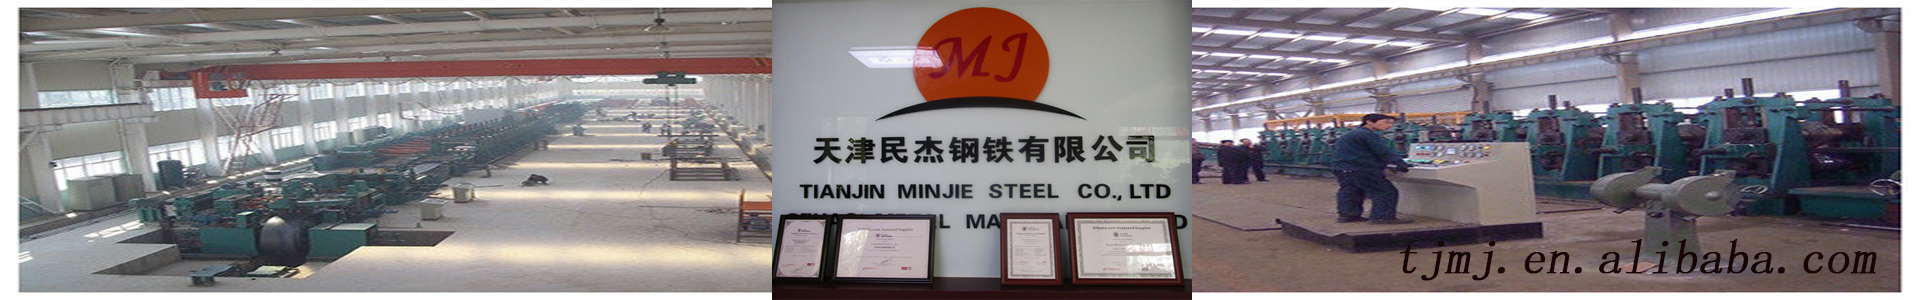 Tianjin Minjie Steel Co., Ltd.